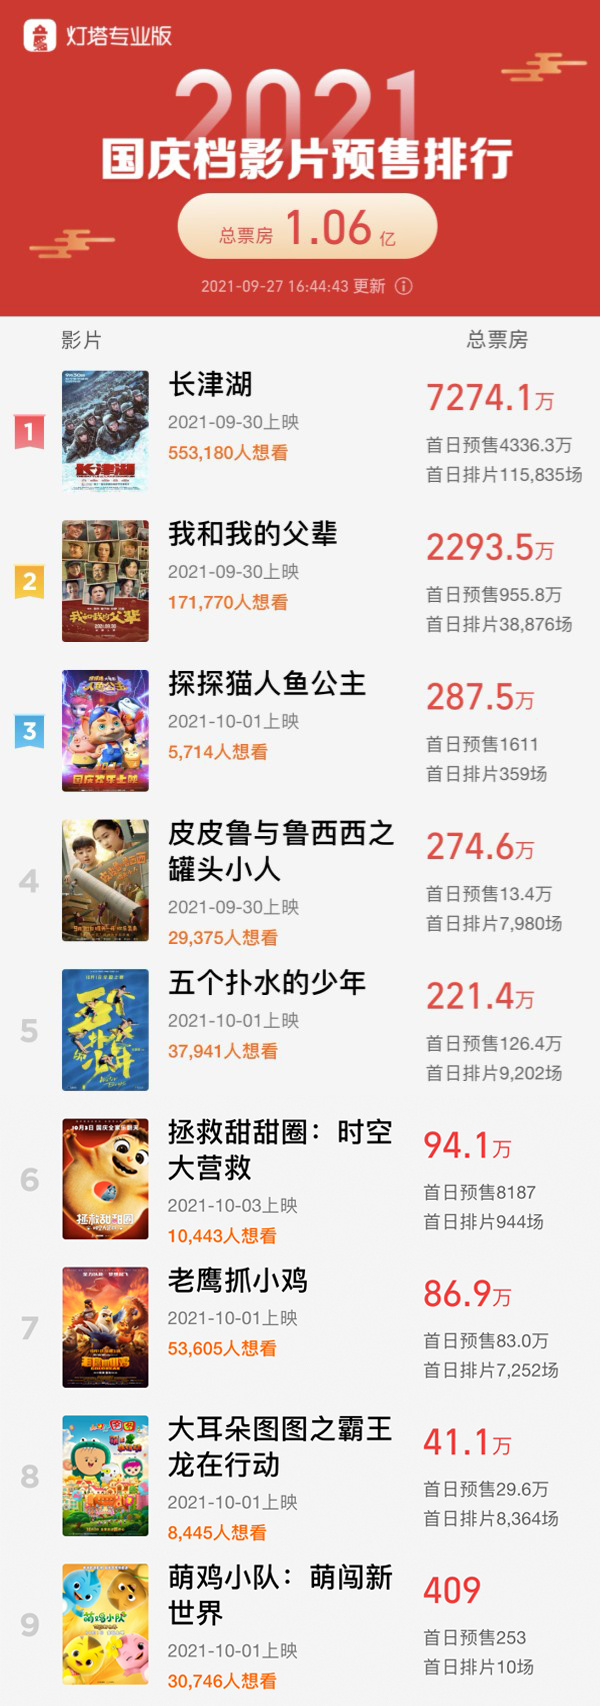 国庆档新片预售票房破亿 《长津湖》超7000万领跑(图1)